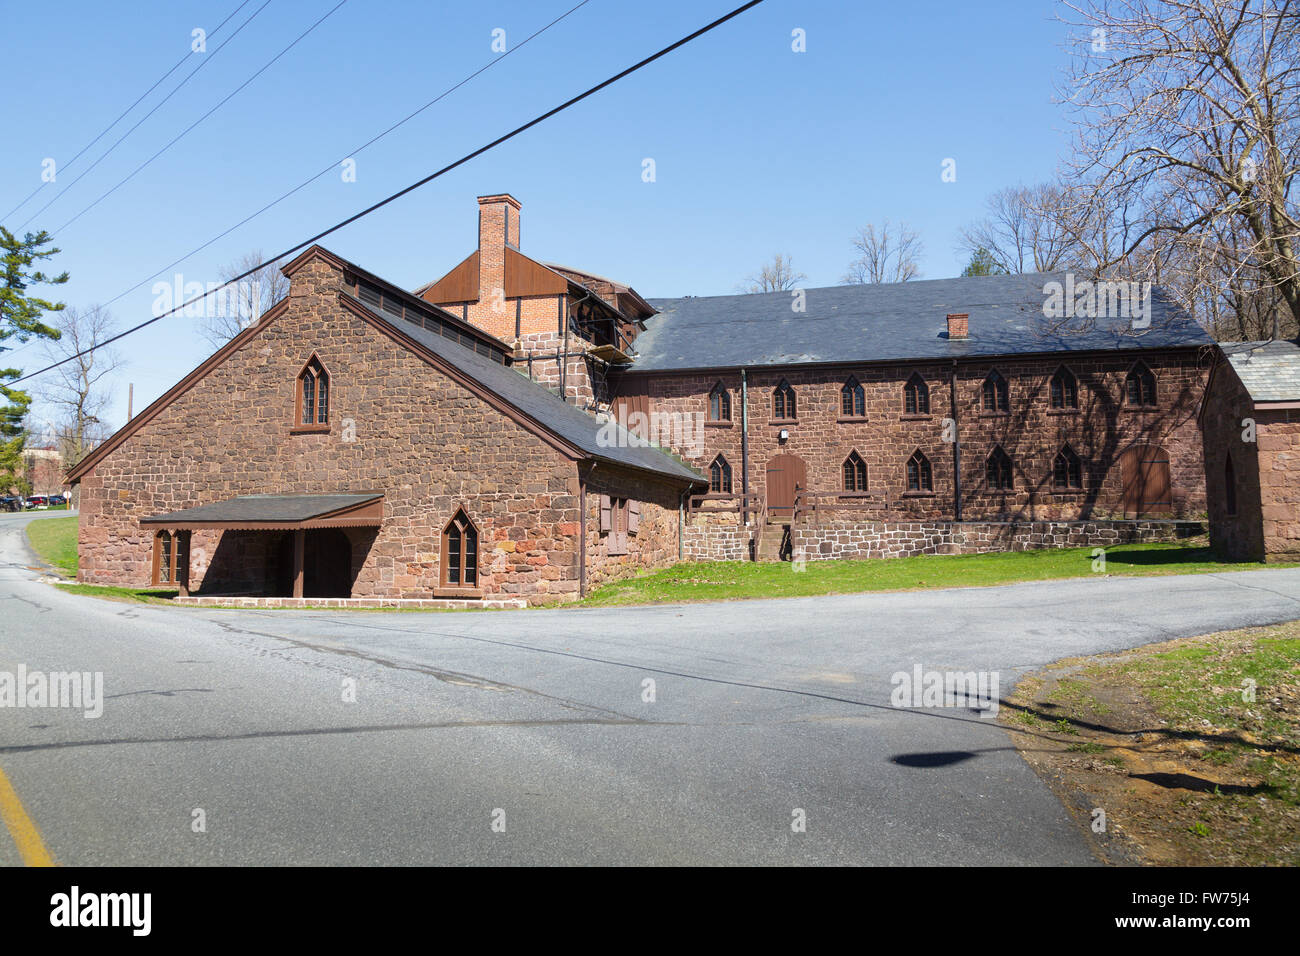 Cornovaglia forno, in uso 1742 al 1883, pietra miliare storica nazionale, Libano County, Pennsylvania, USA. Foto Stock